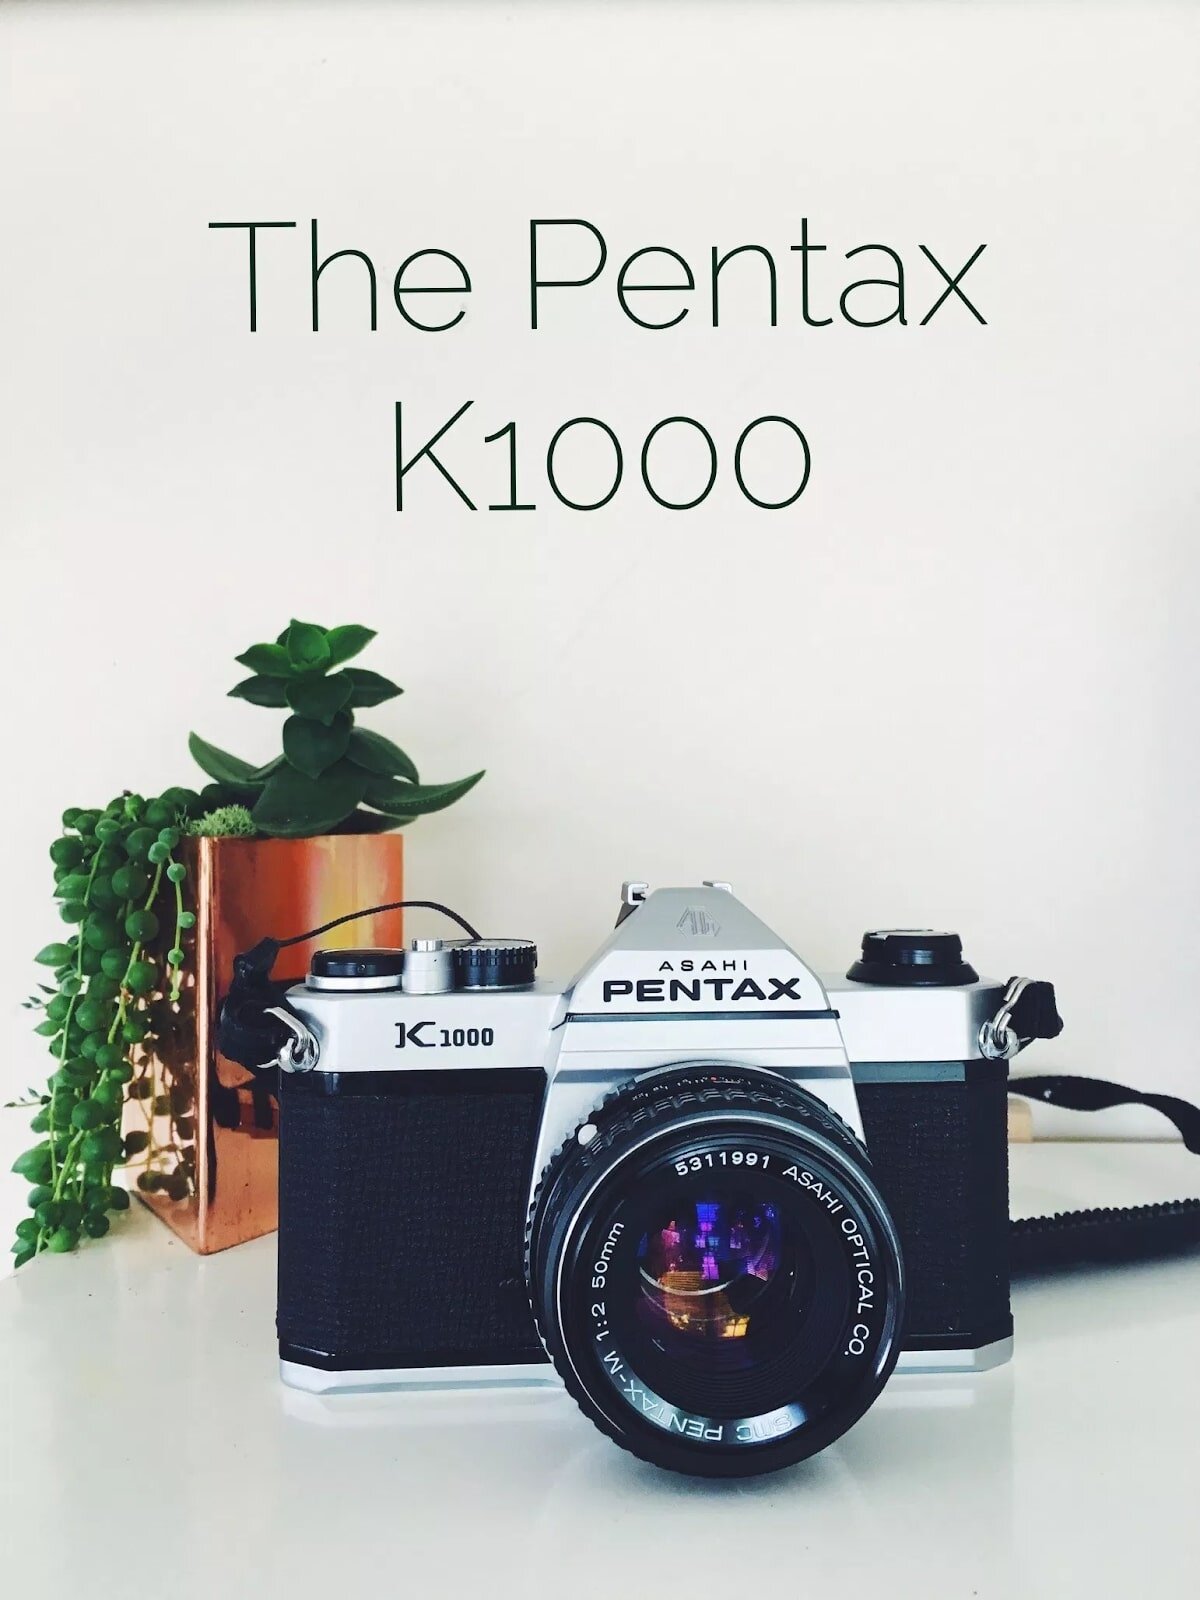 Pentax K1000